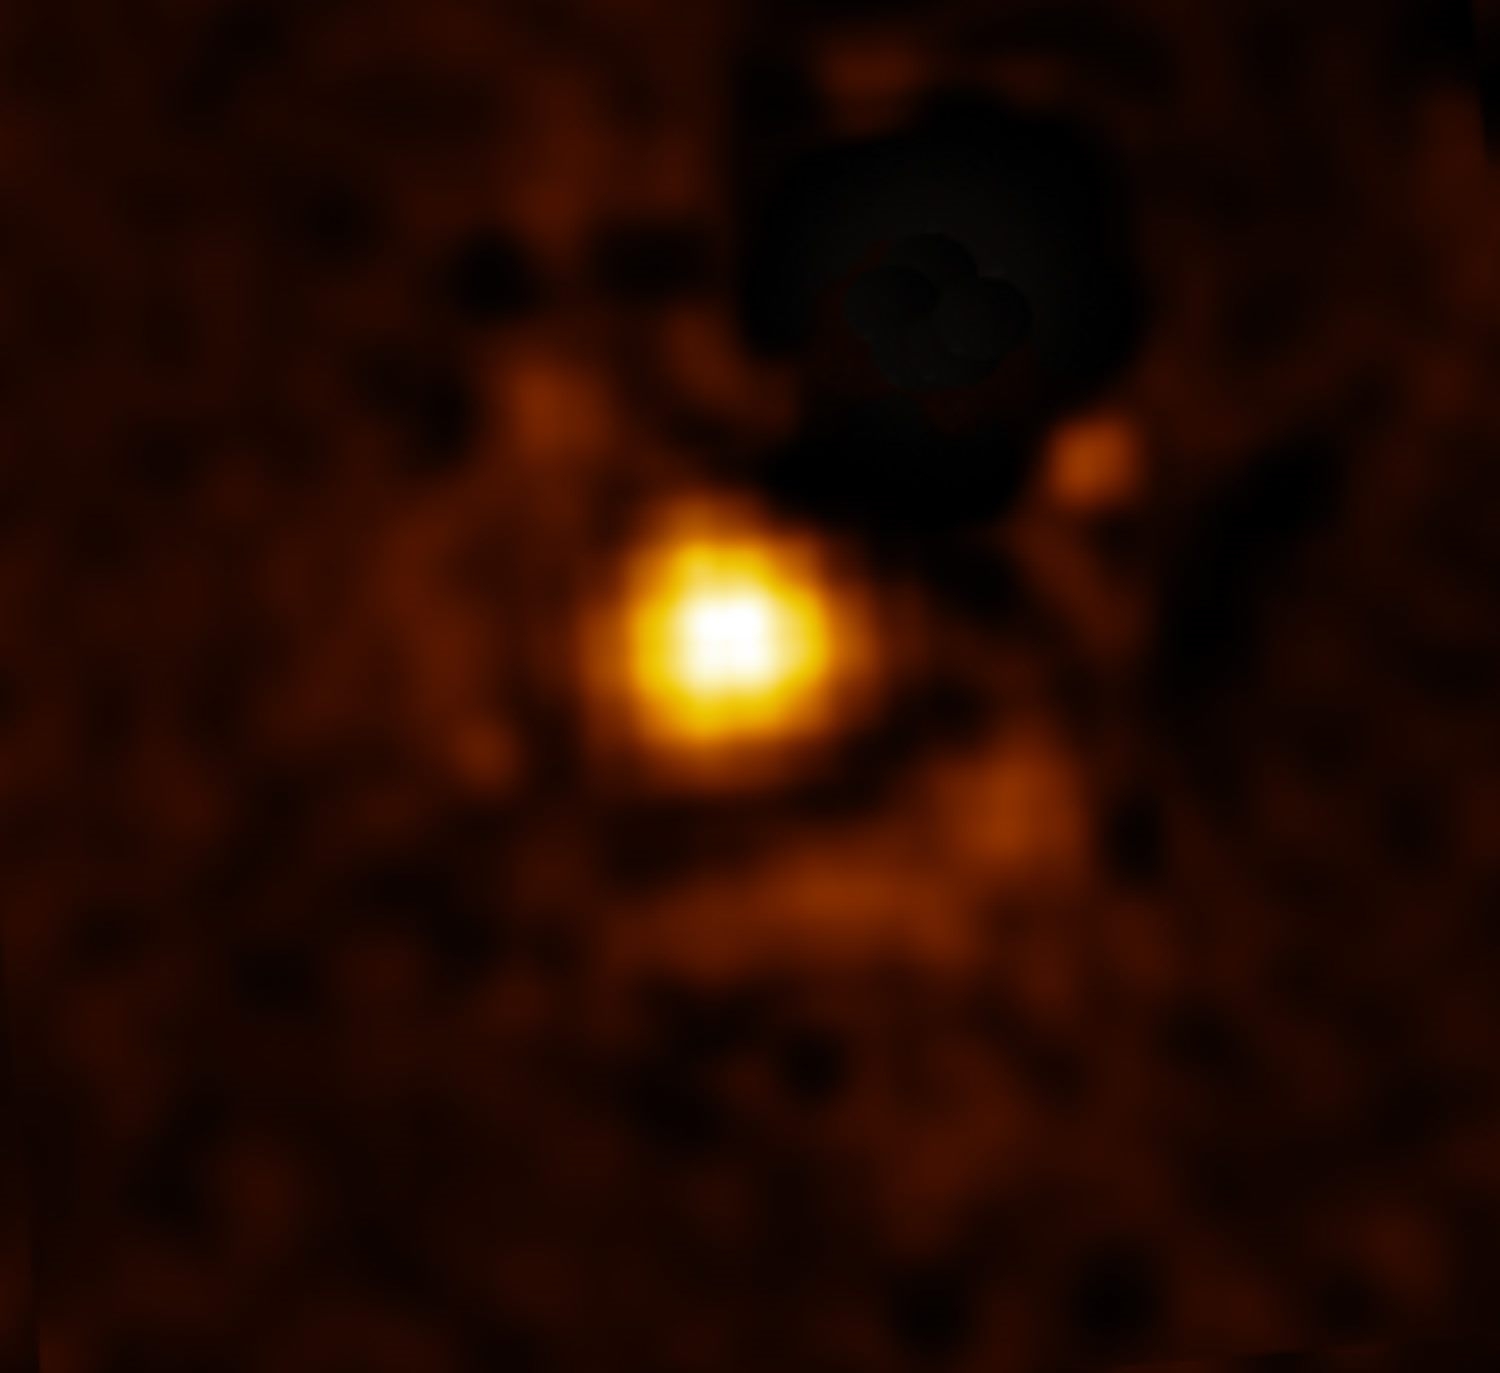 韦伯太空望远镜首次拍摄到系外超级木星HIP 65426b 位于半人马座